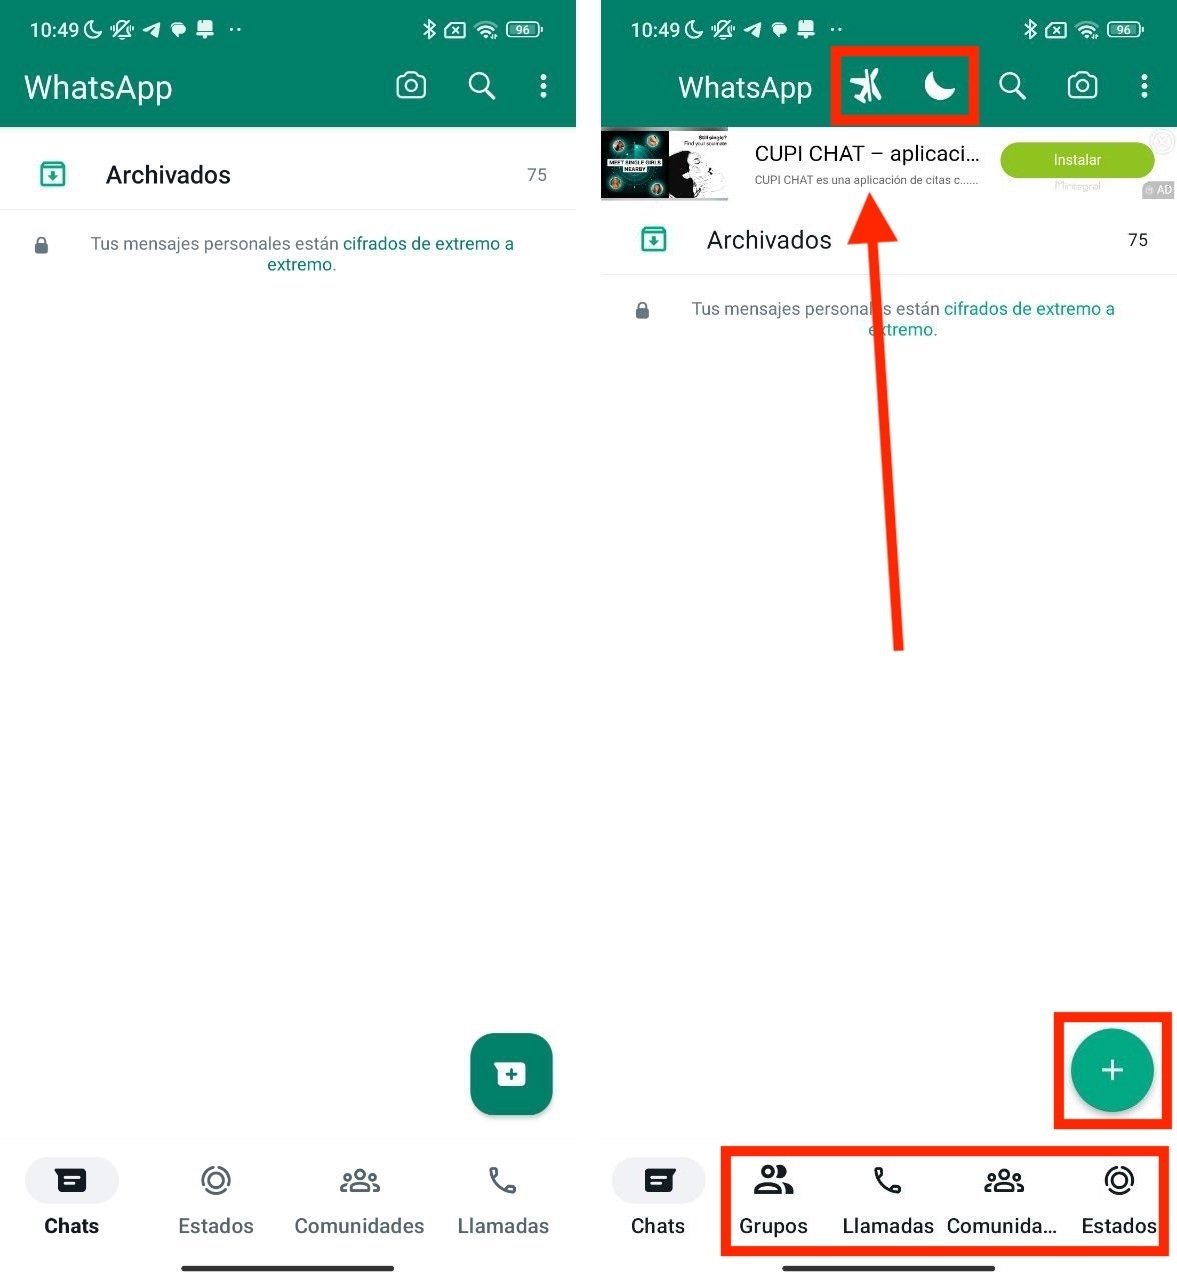 Diferencias en la pantalla principal entre WhatsApp y WhatsApp Plus